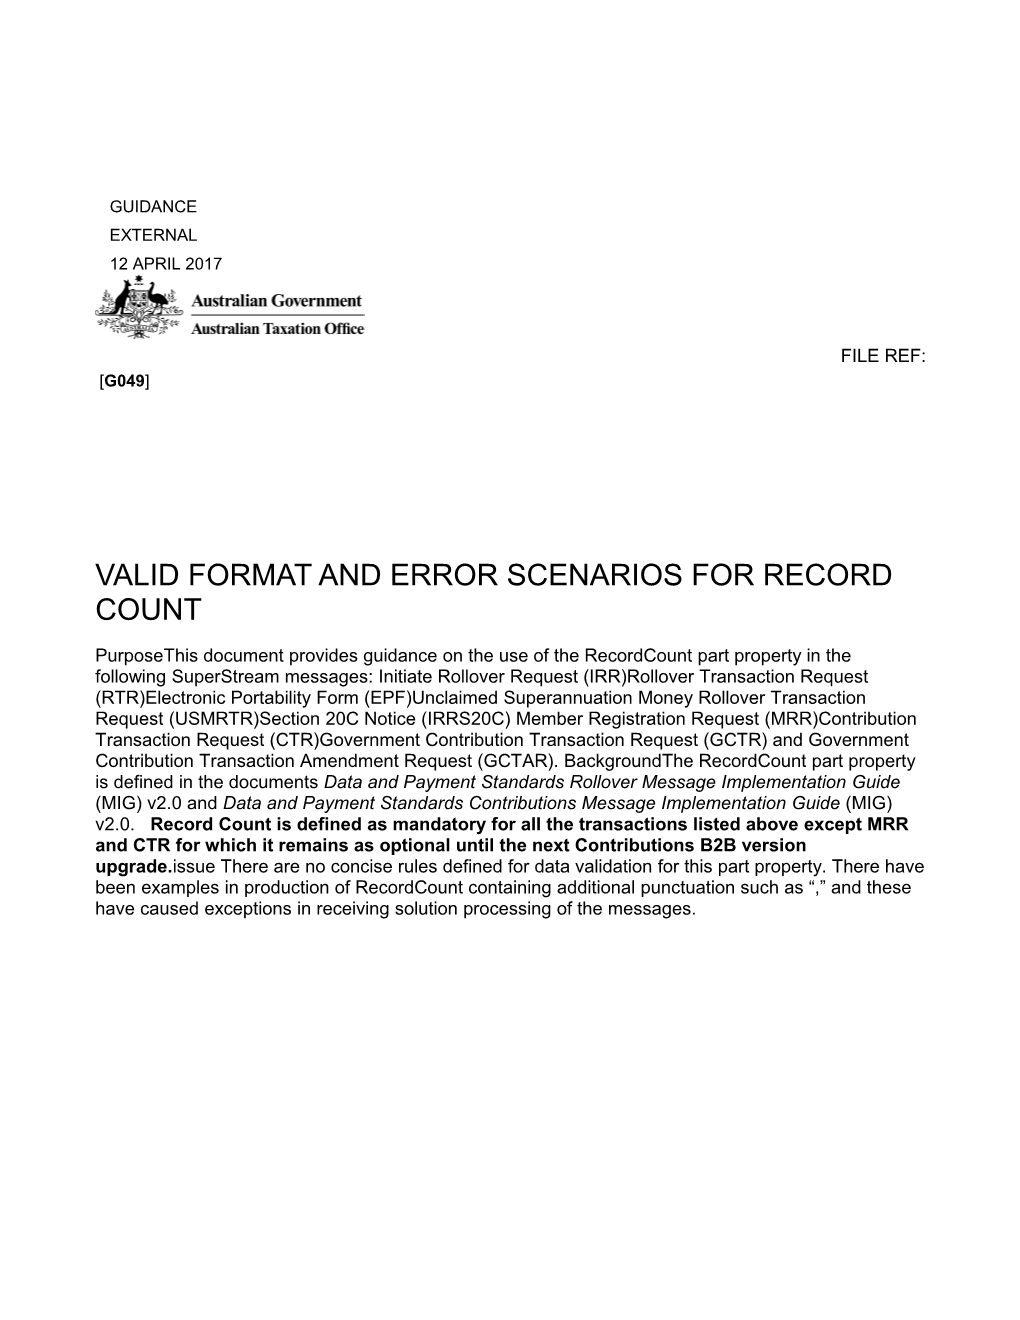 Valid Formatand Error Scenarios for Record Count